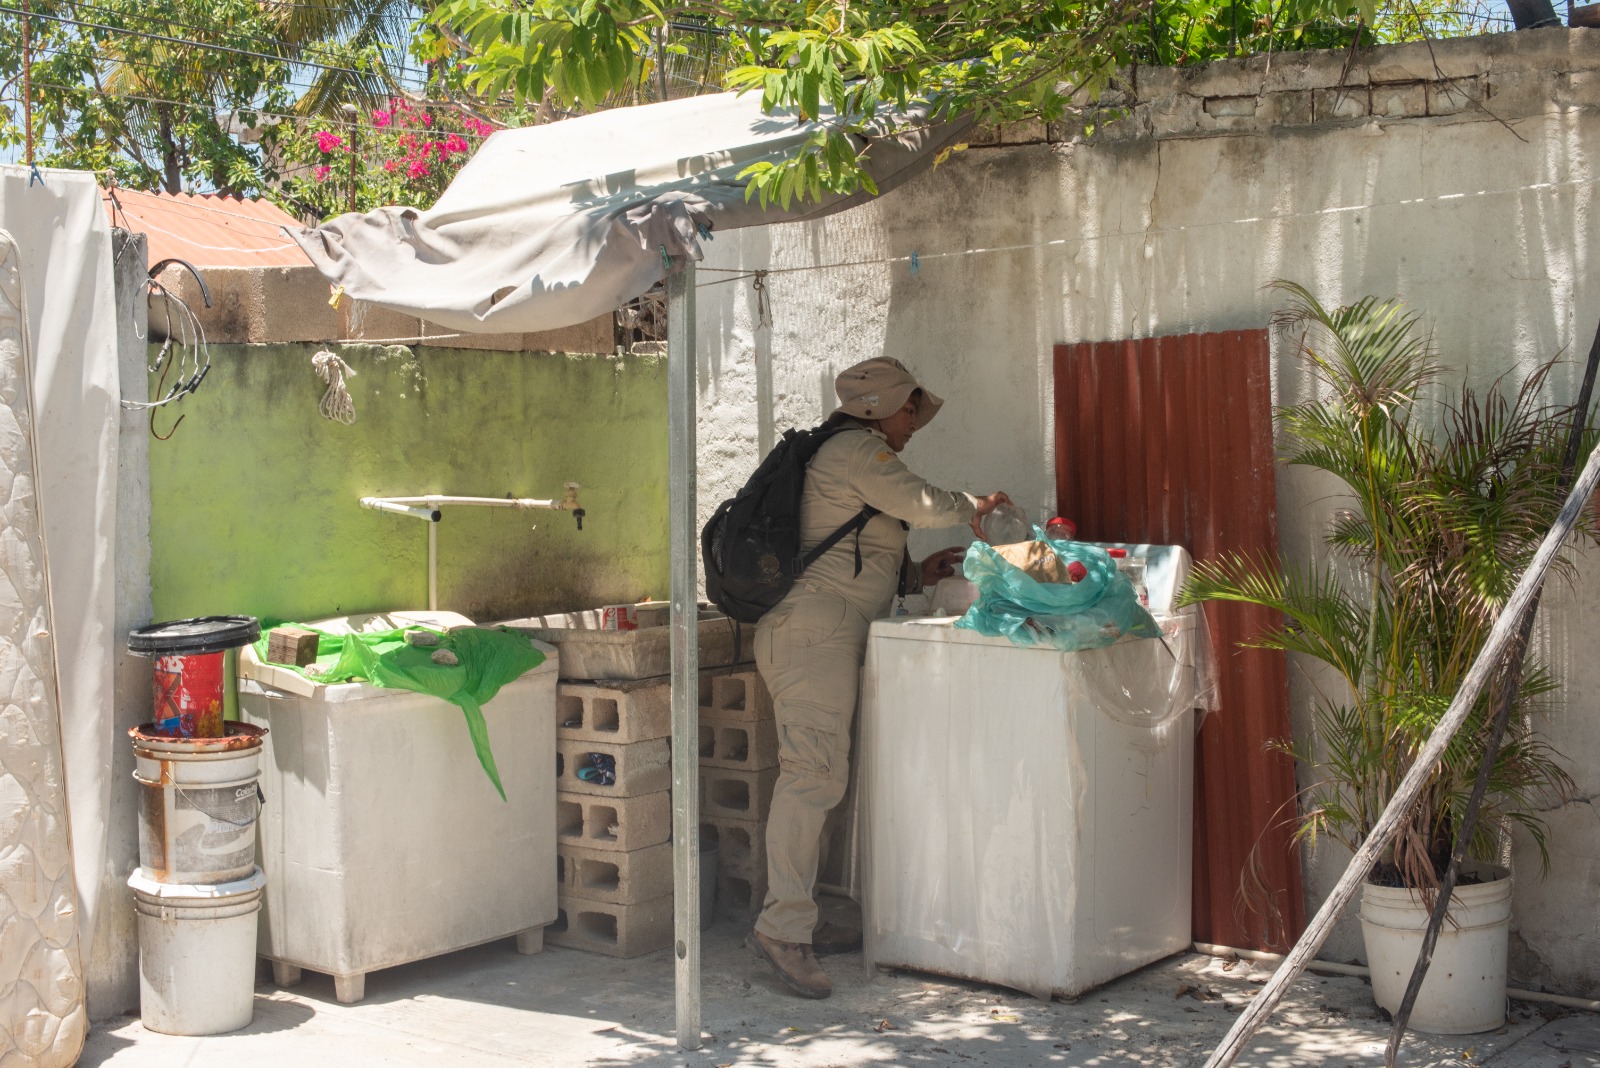 Limpieza de viviendas, la medida más efectiva contra el dengue